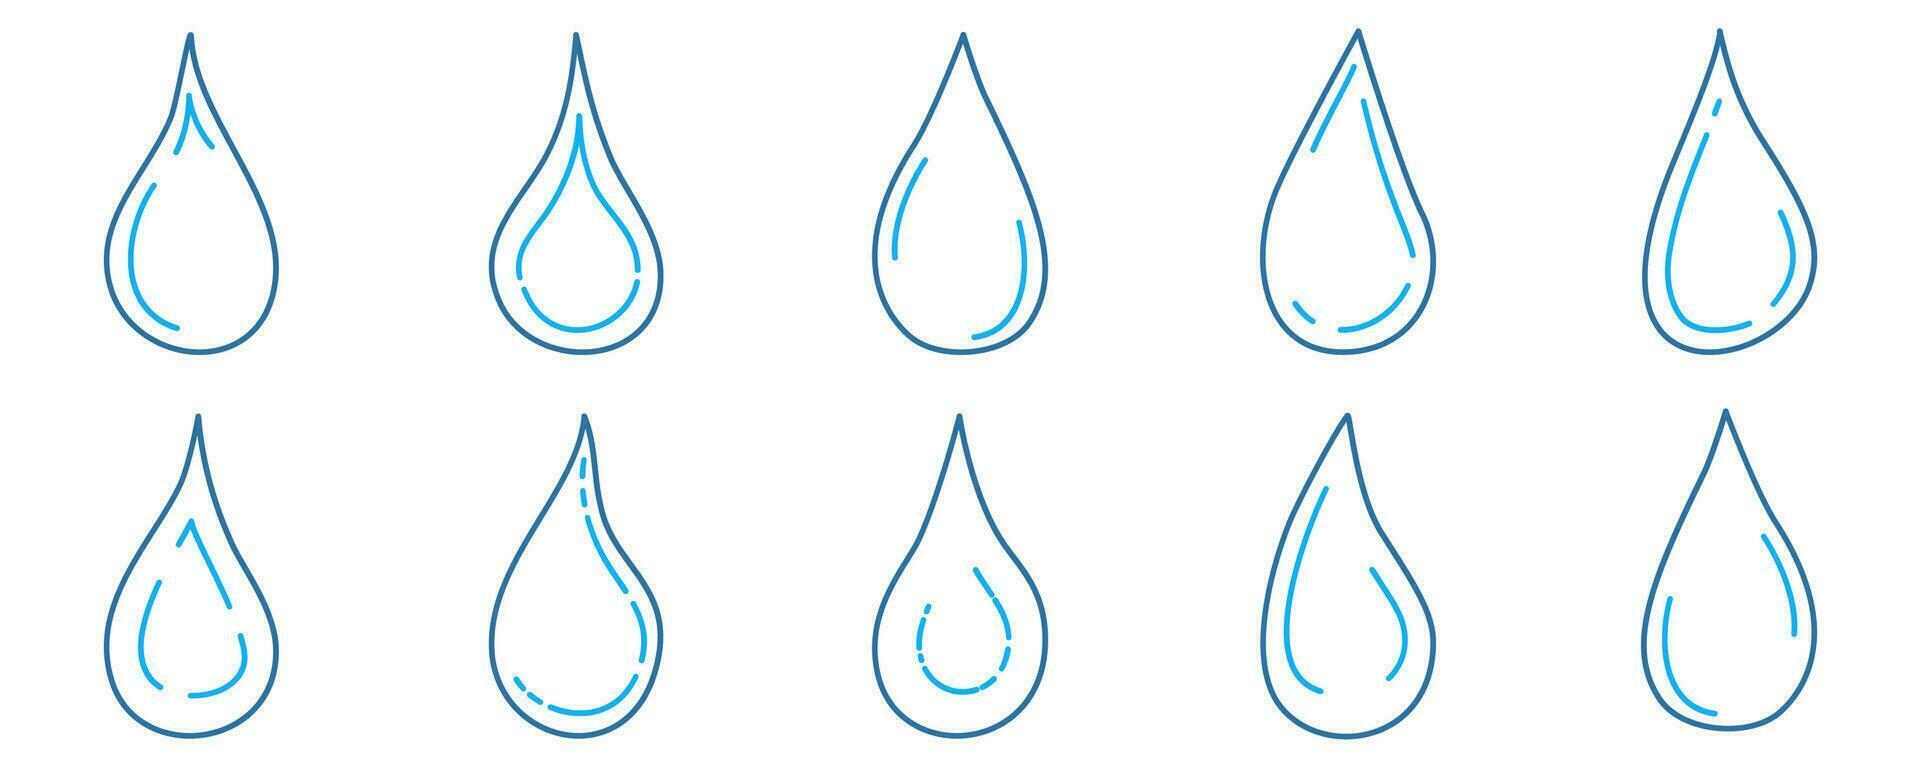 garabatear agua gotas. mano dibujado bosquejo ilustración de gotas o lágrimas. vector para imprimir, web, móvil y infografia